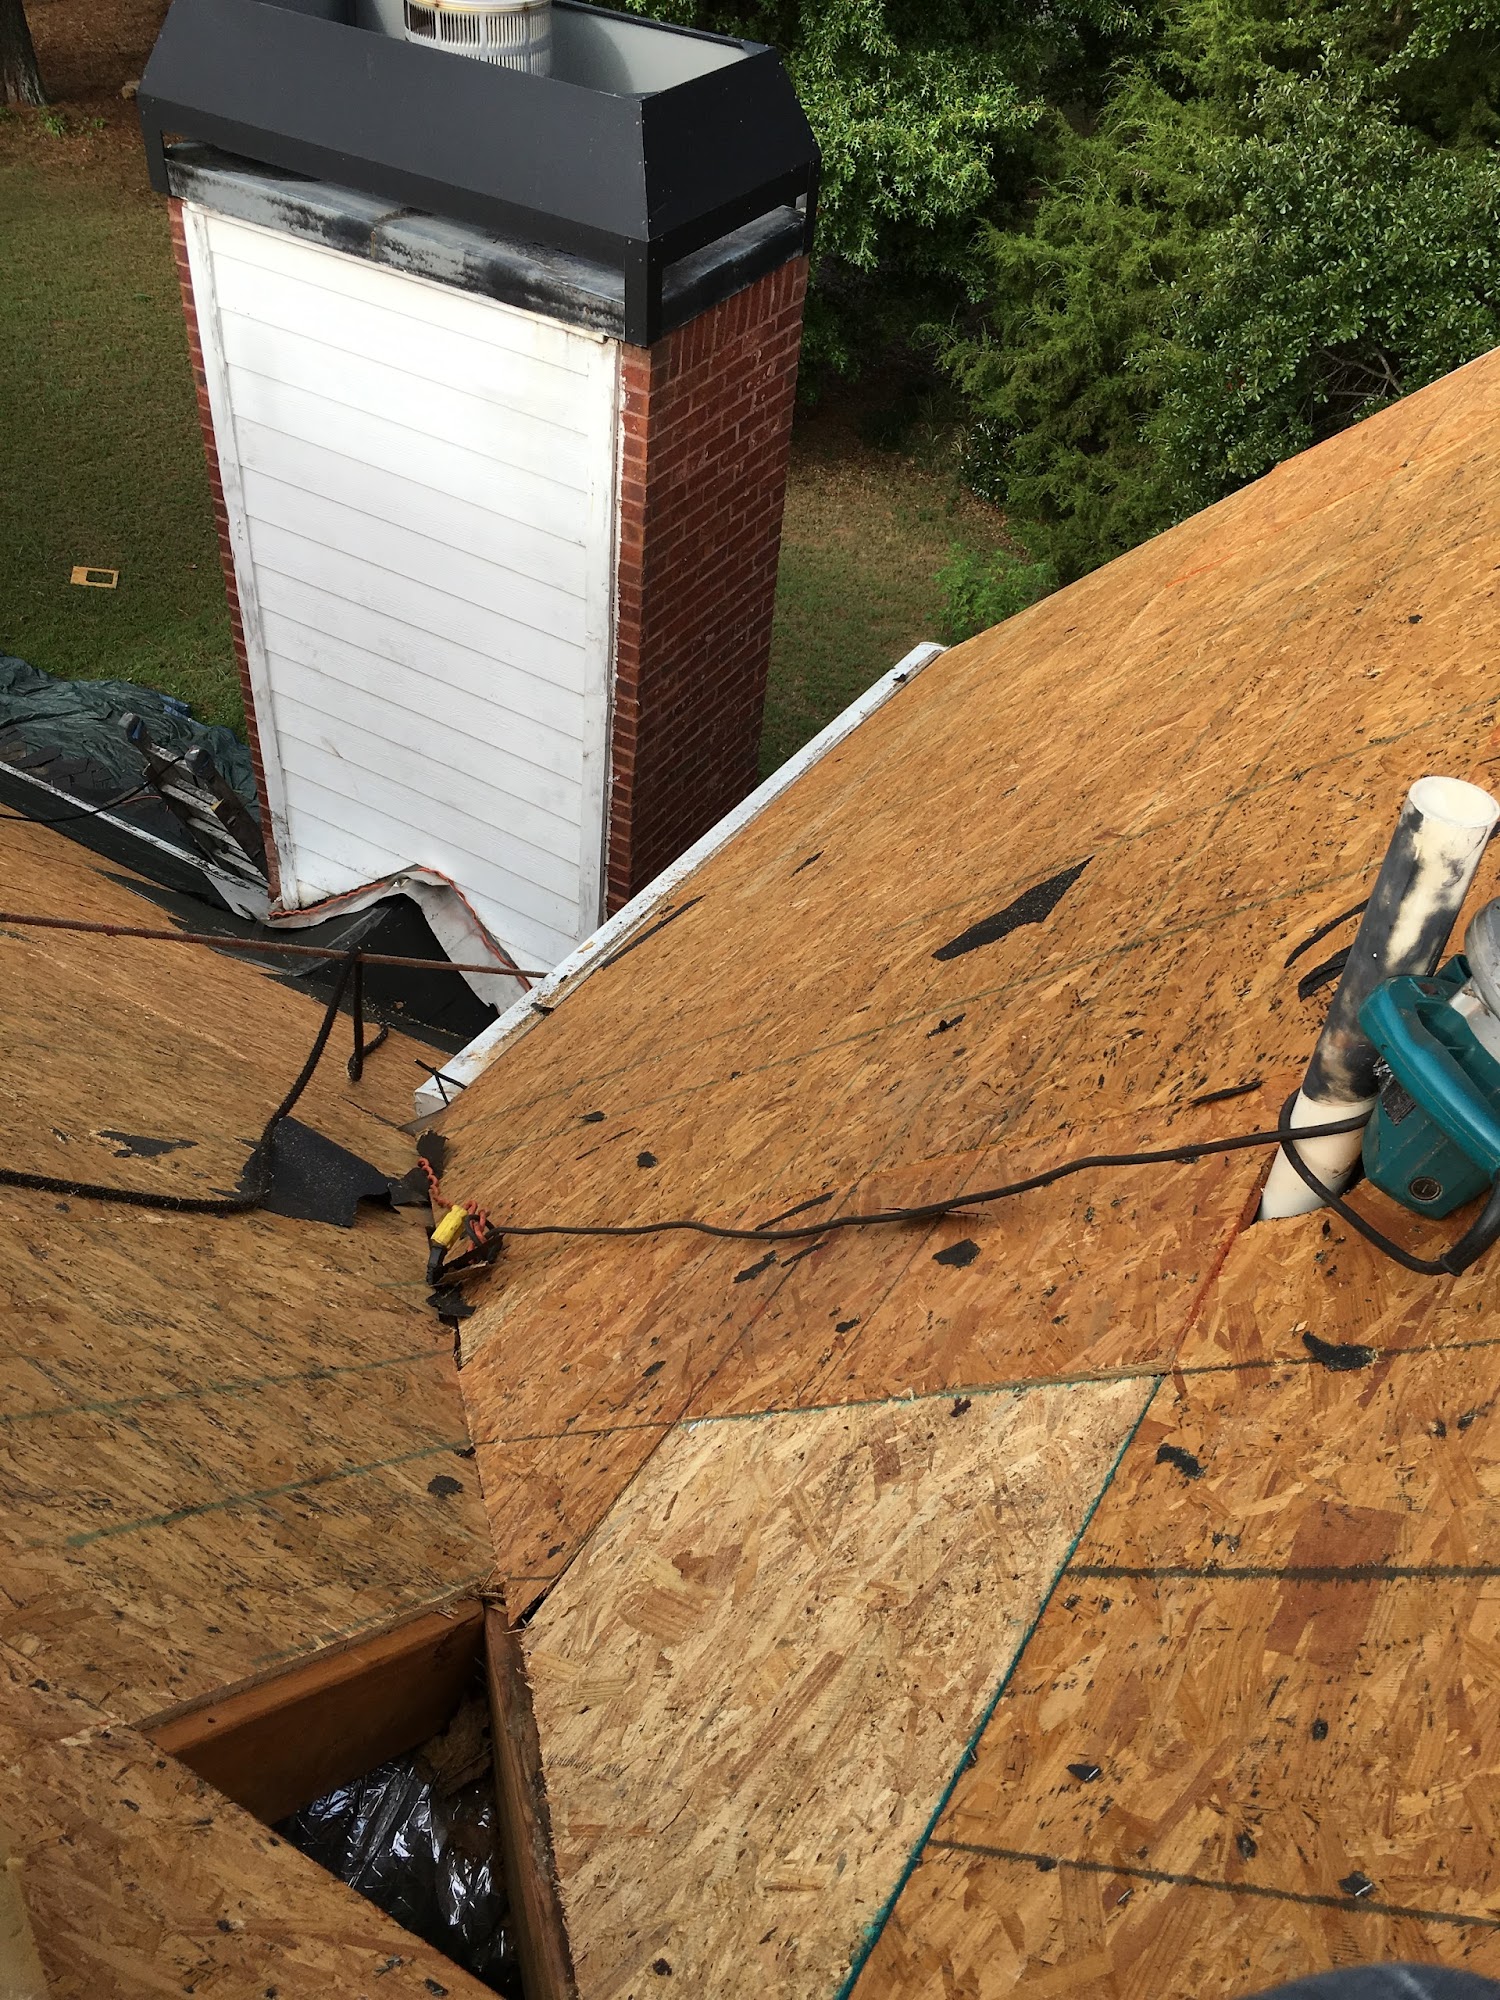 Tristan Roof Repairs